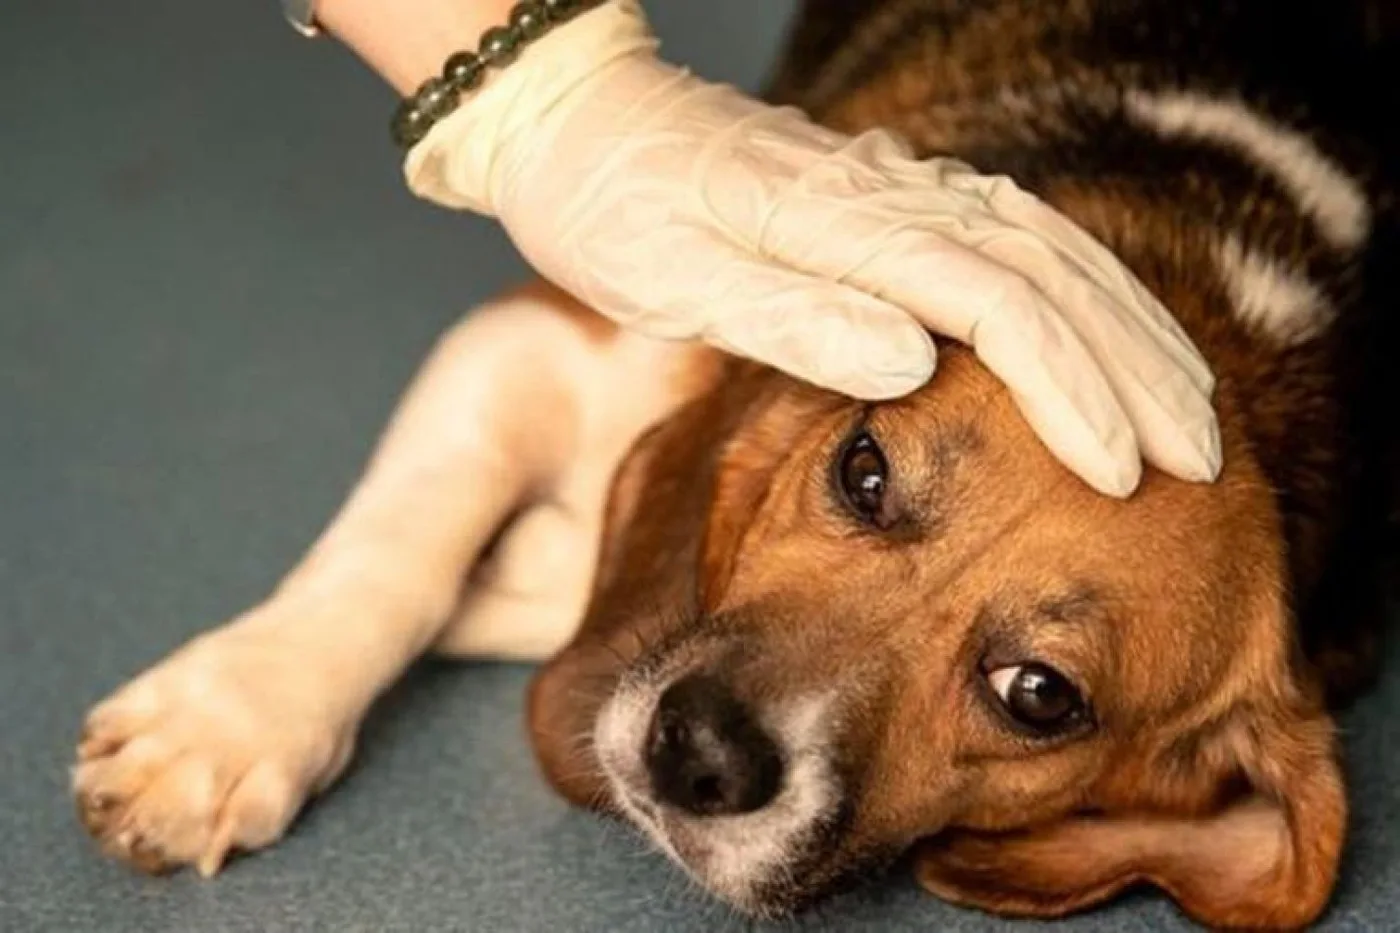 Los perros que han sido atacados por la enfermedad presentan síntomas severos de diarrea y vómitos